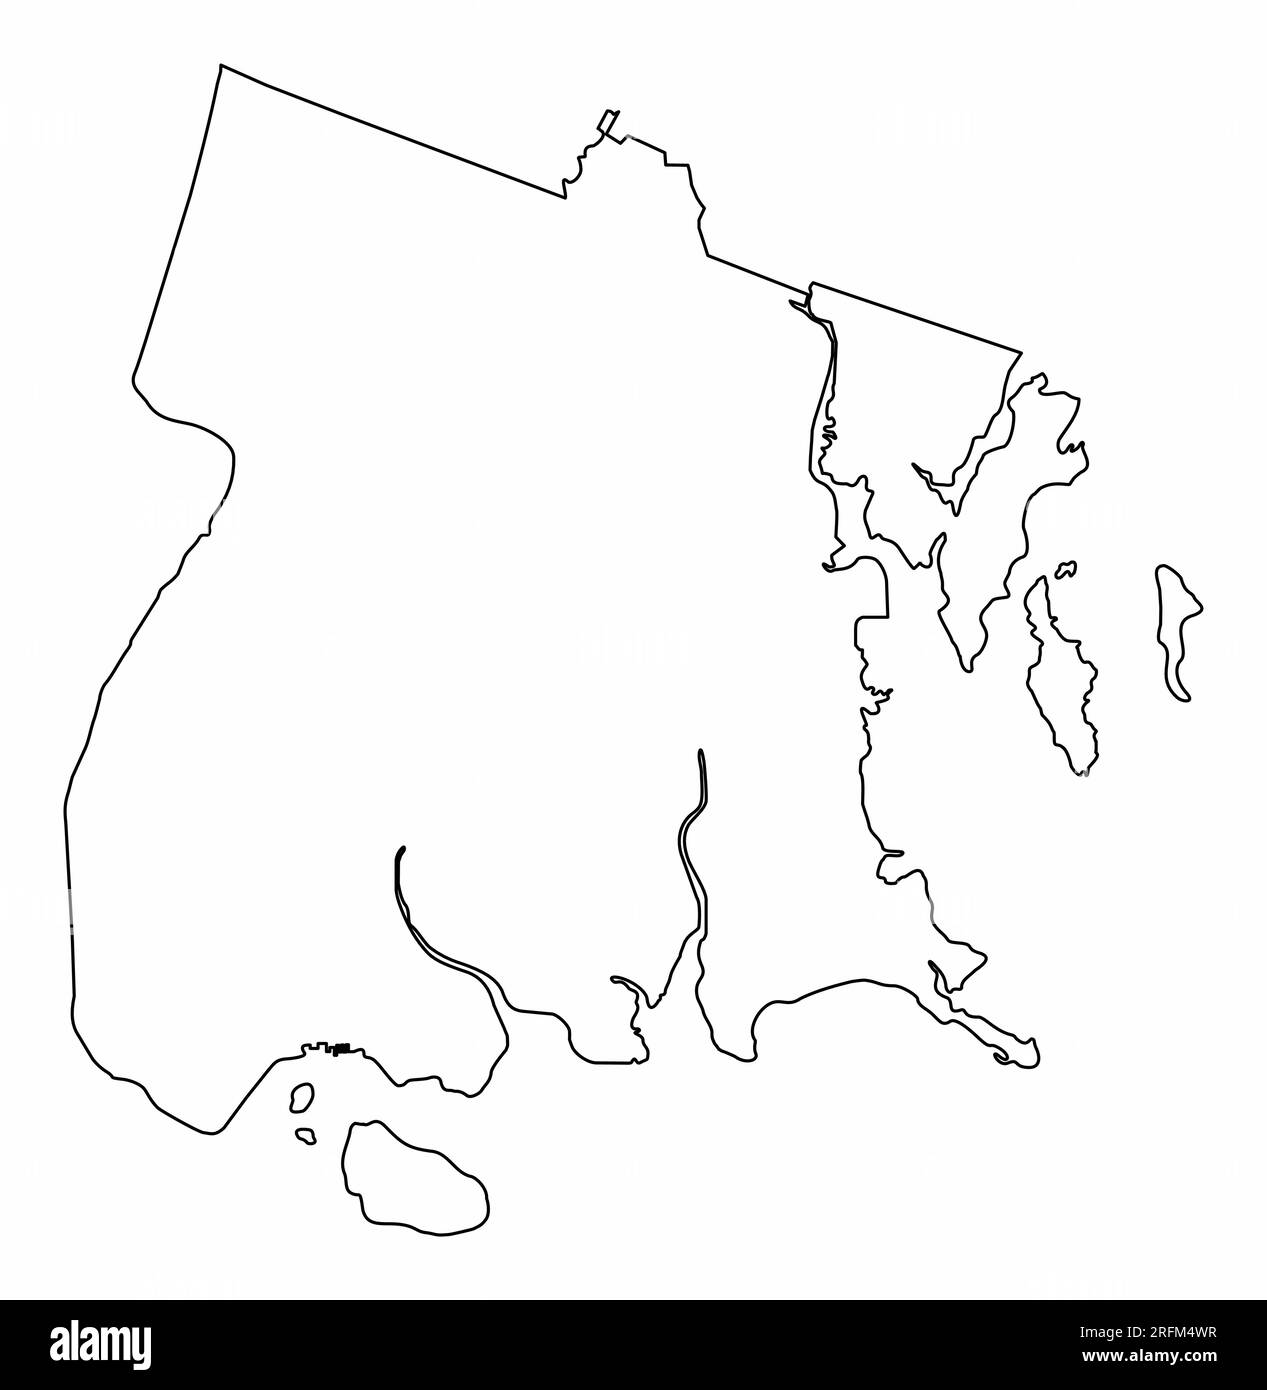 Le contour de la carte du Bronx isolé sur fond blanc, New York City Illustration de Vecteur